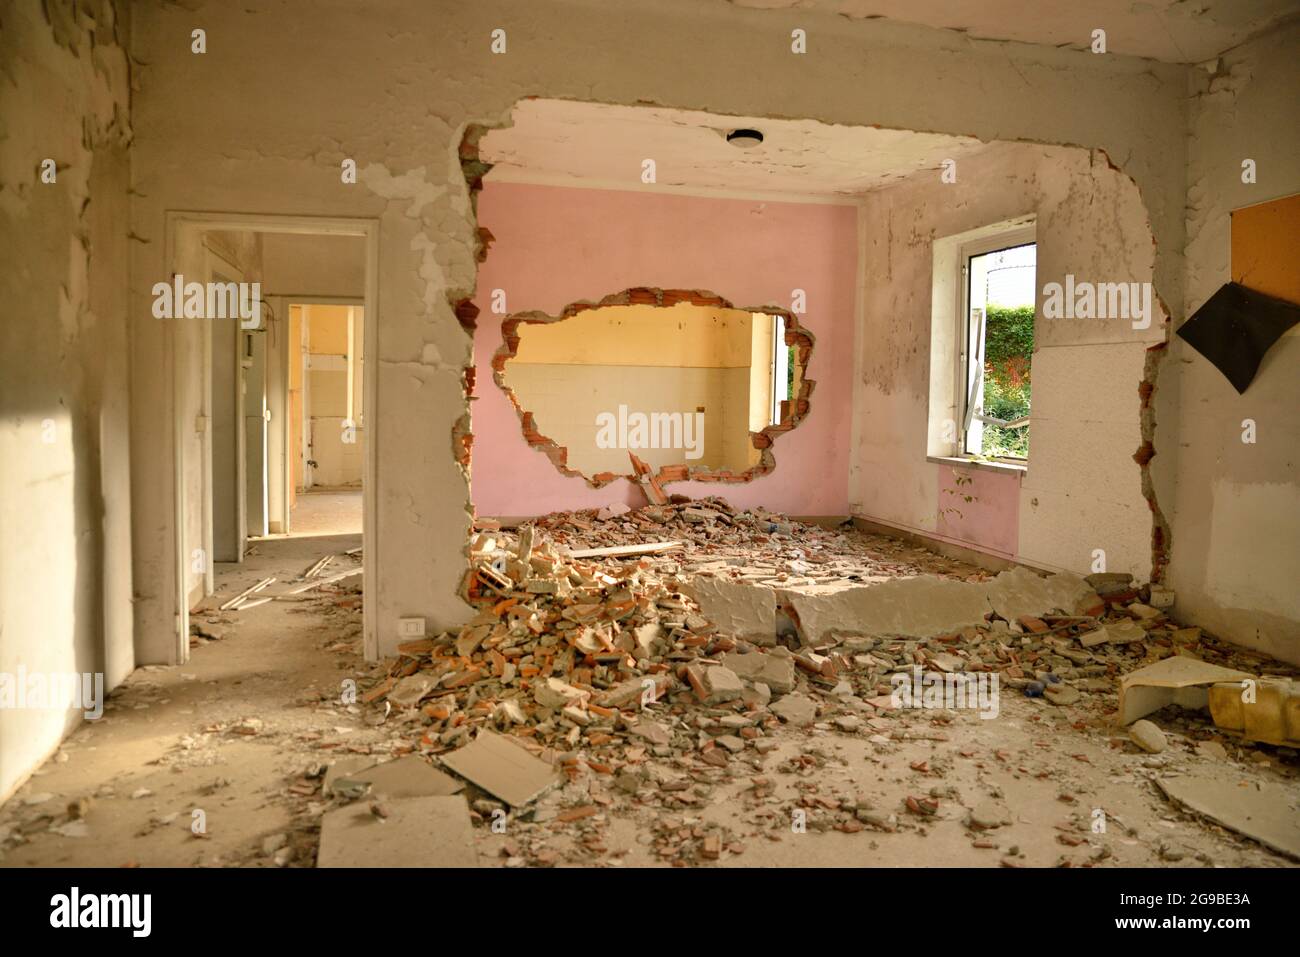 Abandoned house creepy interior Stock Photo